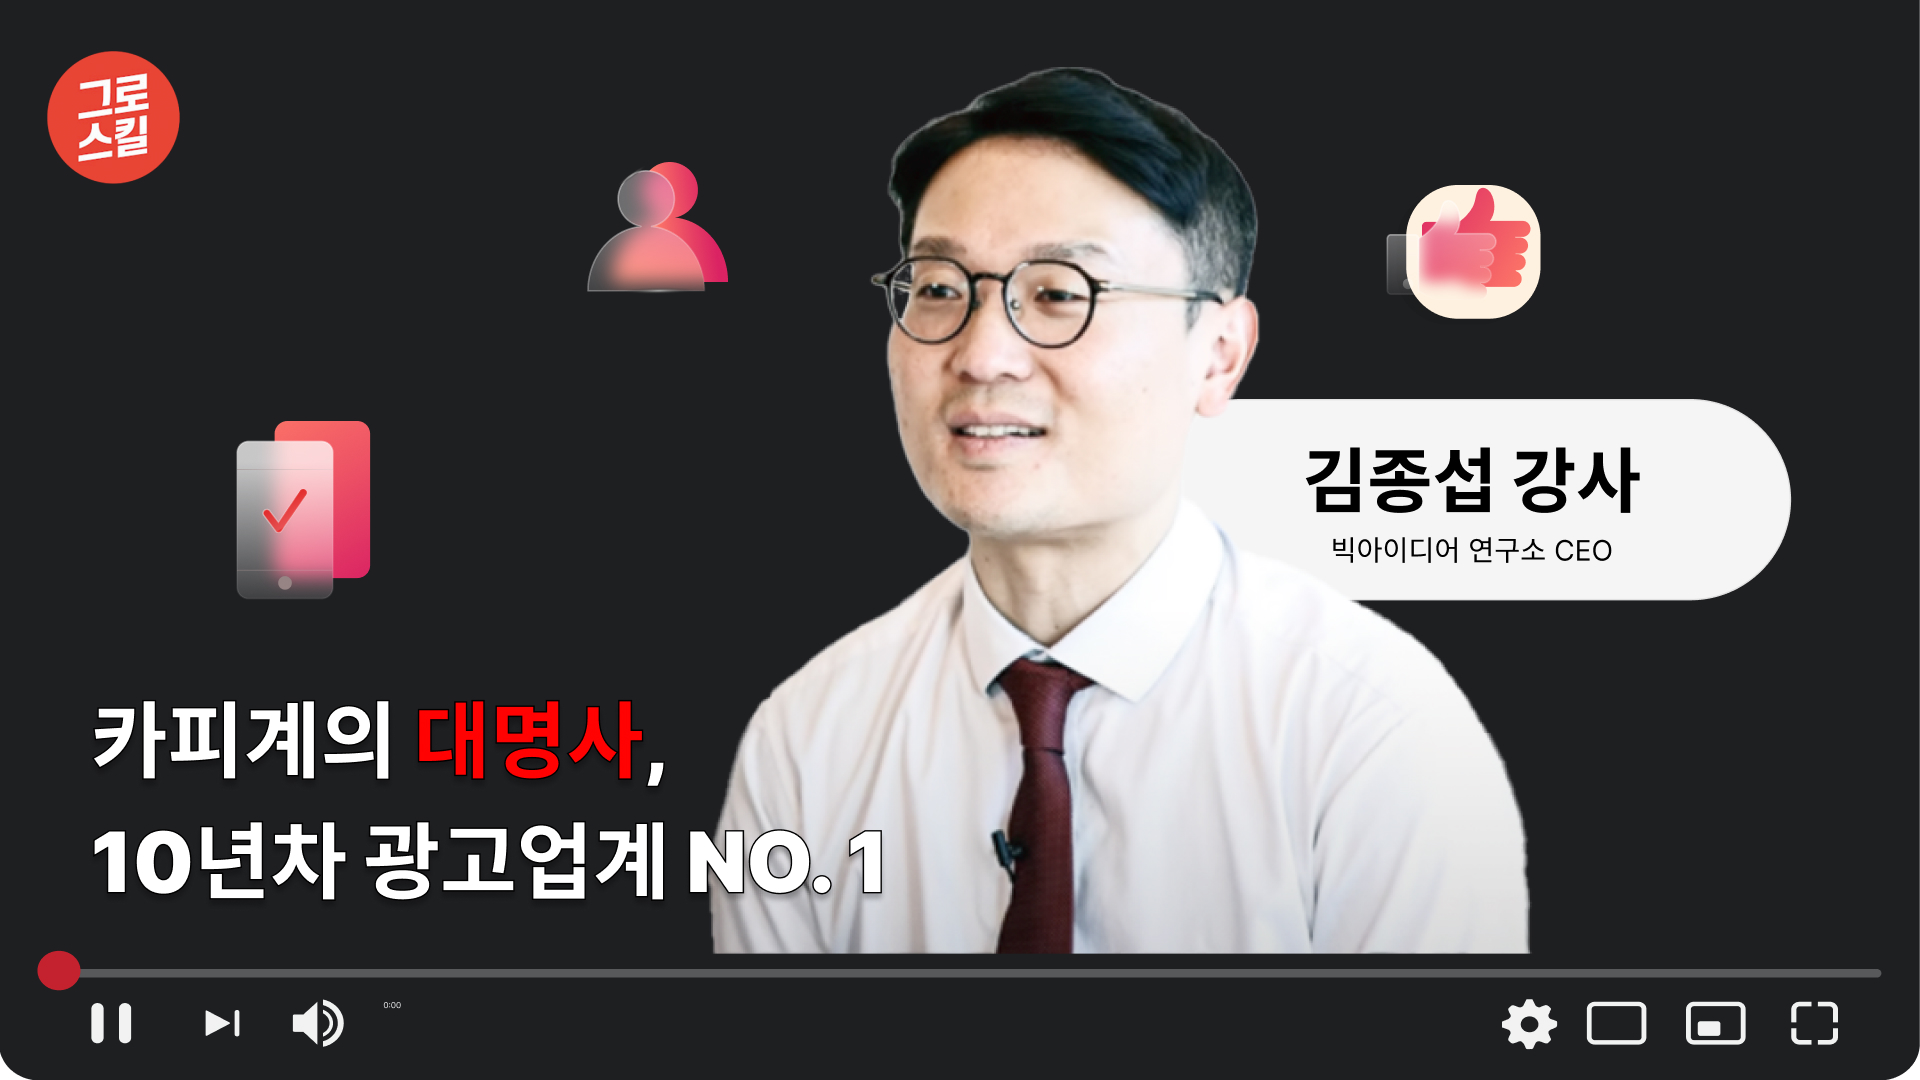 (3분카피챌린지) 업계 NO1 김종섭 강사님의 카피라이팅